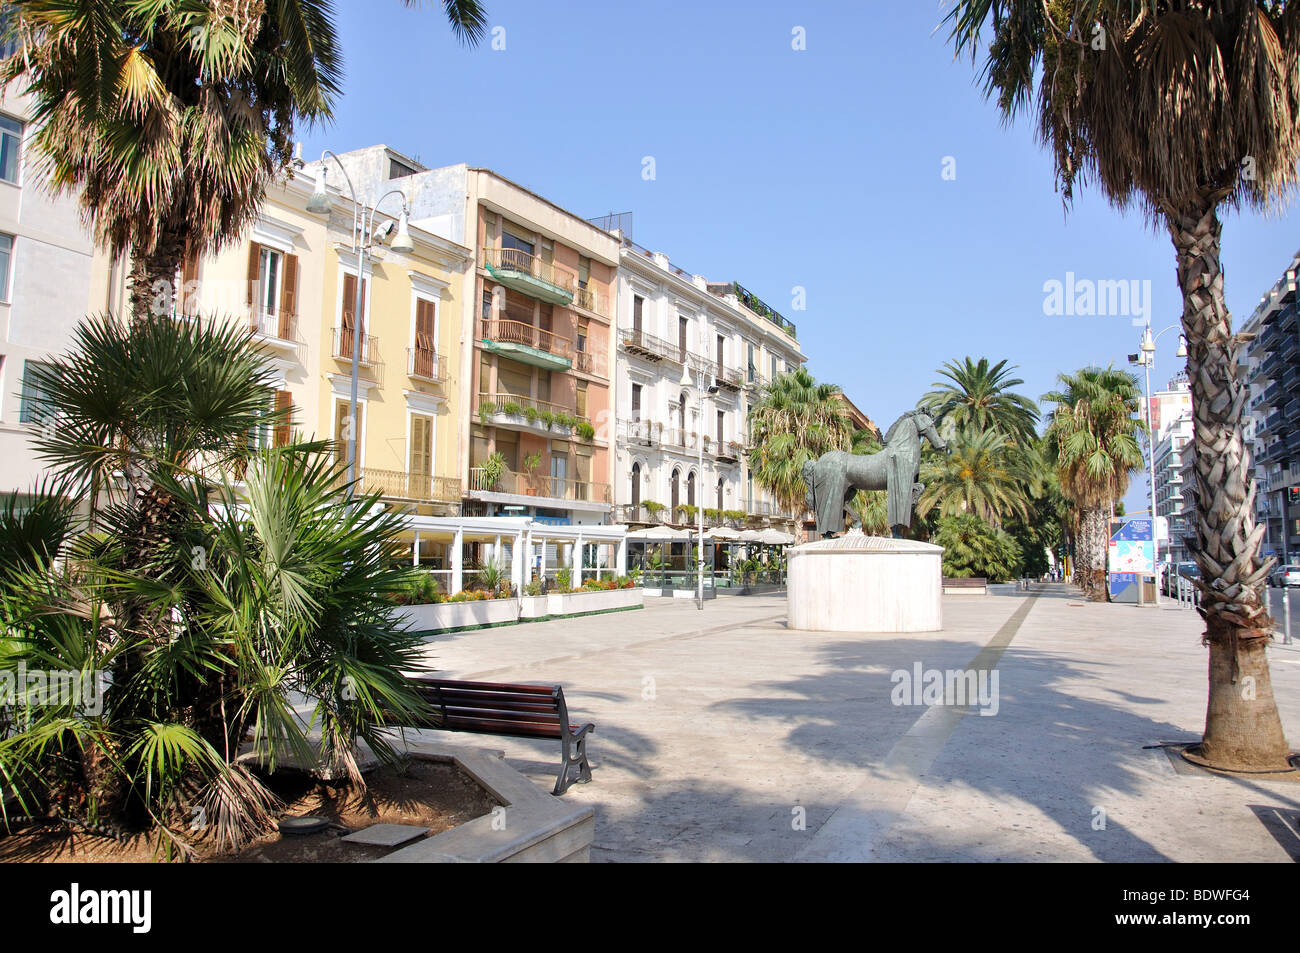 Corso Vittorio Emanuele II, Bari, Bari Province, Région des Pouilles, Italie Banque D'Images